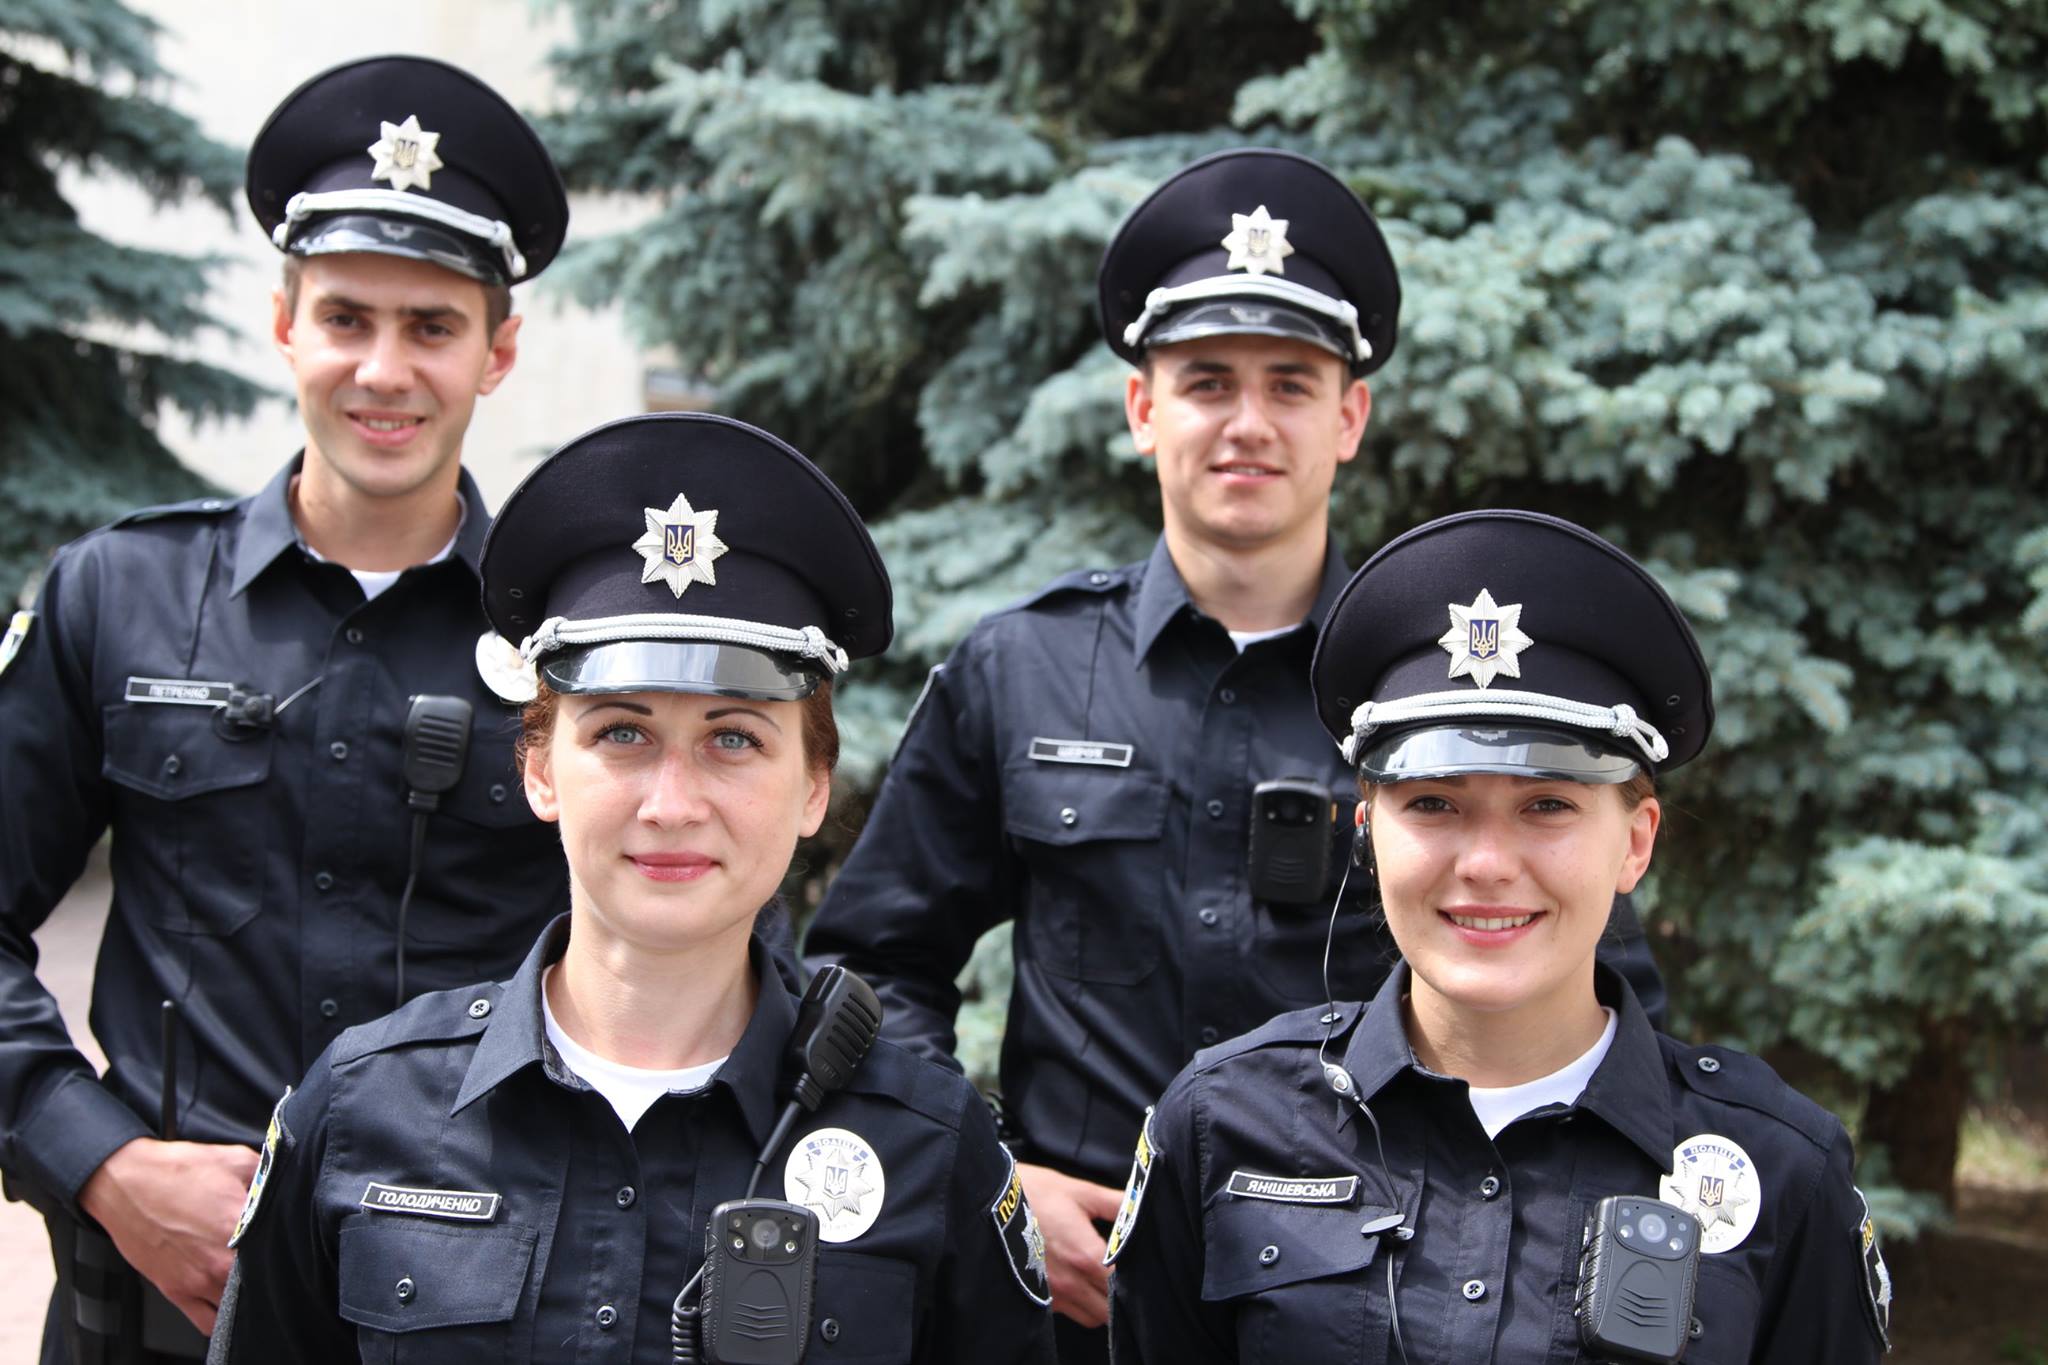 фото полиции украины